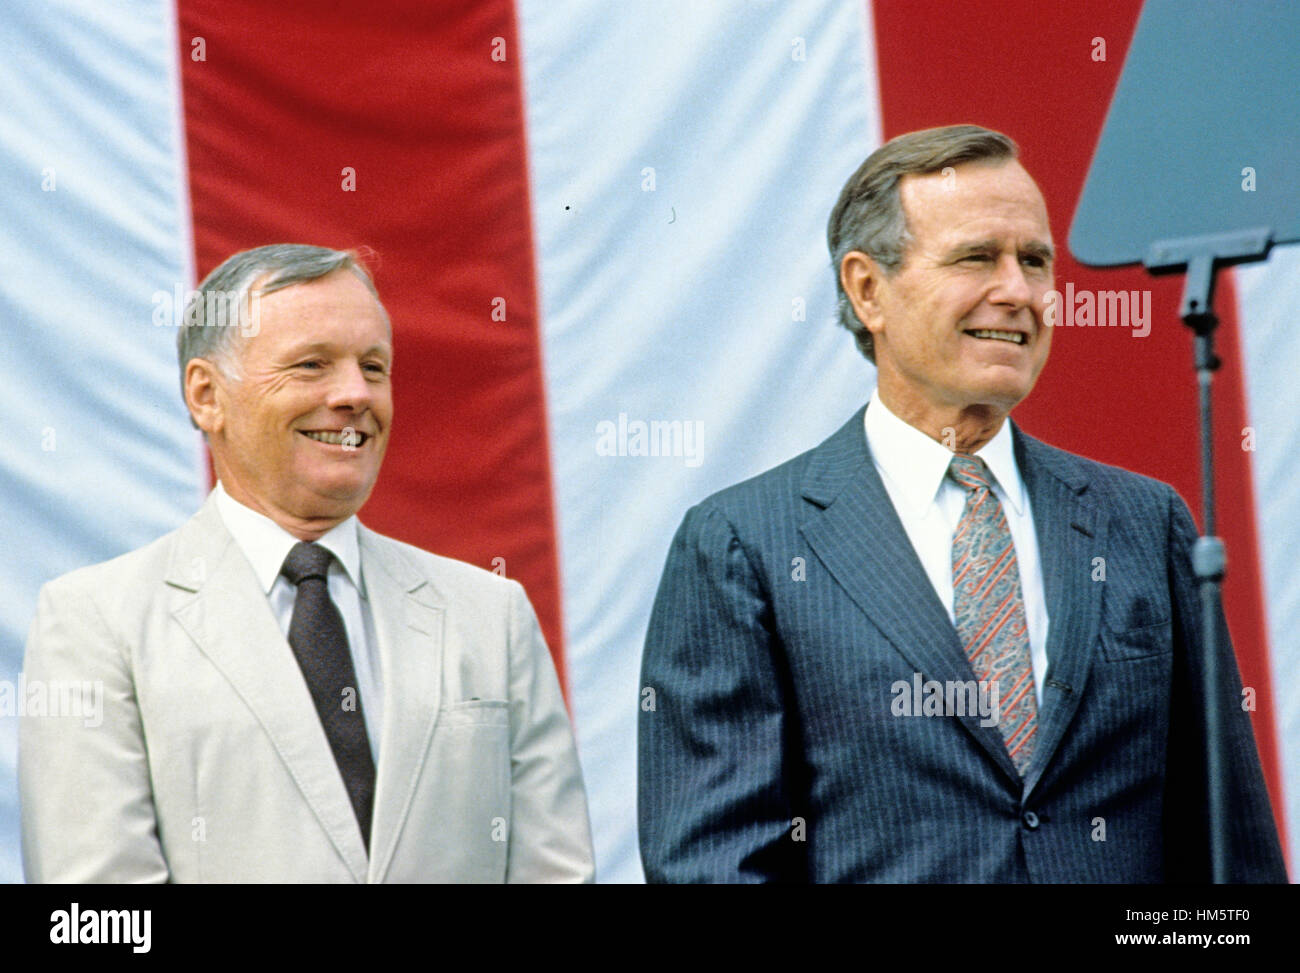 Le président des États-Unis George H. W. Bush, la droite, et le commandant d'Apollo 11, Neil Armstrong, apparaissent à gauche un événement au National Air and Space Museum de Washington, D.C. pour commémorer le 20e anniversaire du premier atterrissage sur la Lune habitée sur Juillet Banque D'Images